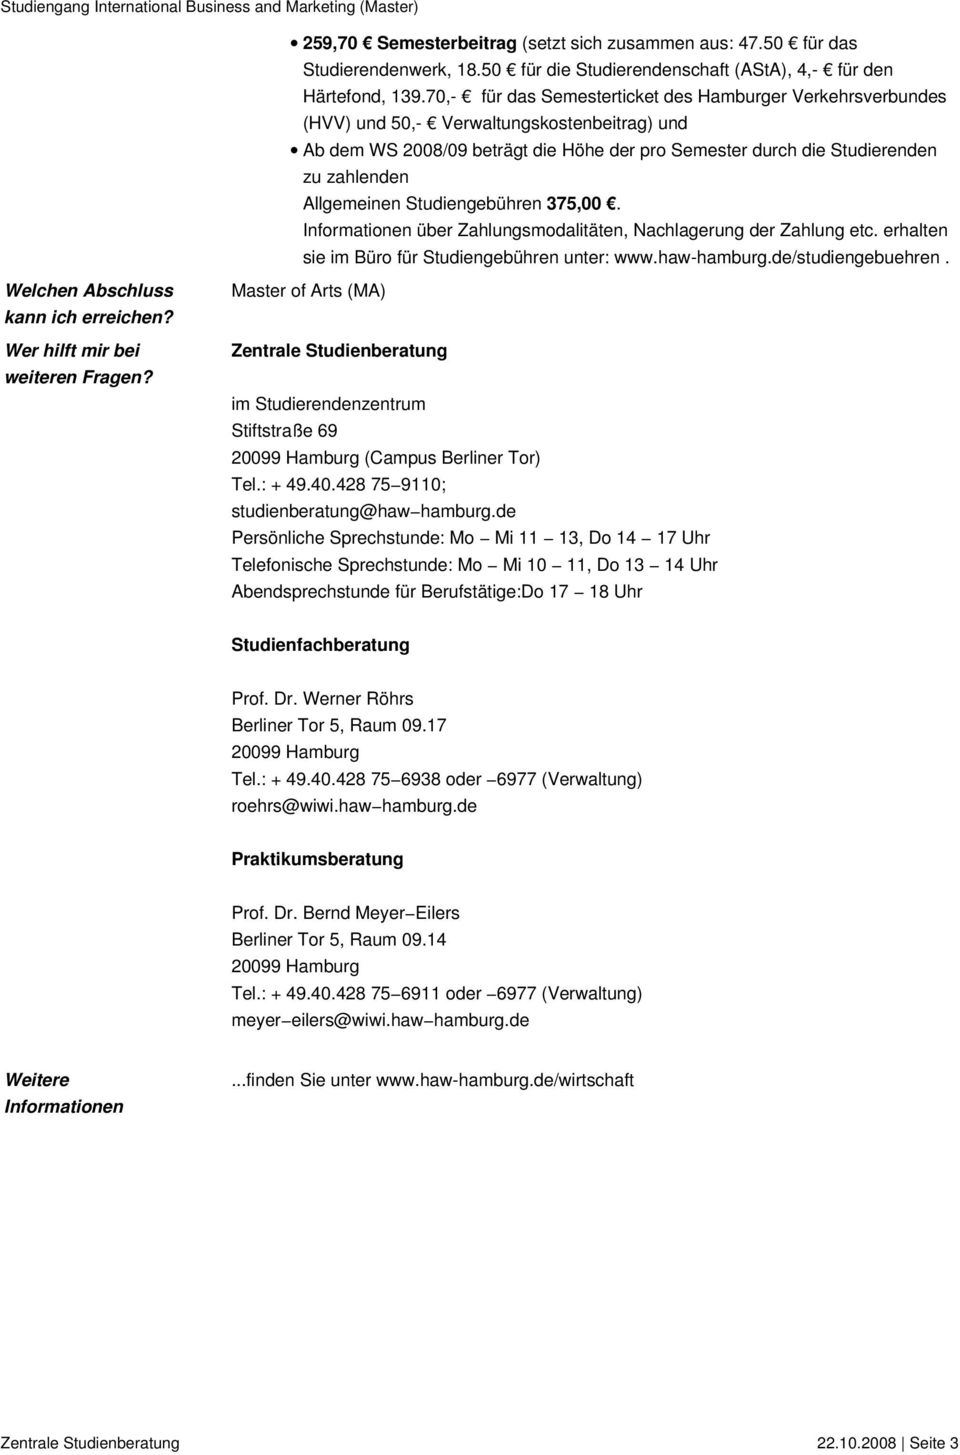 Allgemeinen Studiengebühren 375,00. Informationen über Zahlungsmodalitäten, Nachlagerung der Zahlung etc. erhalten sie im Büro für Studiengebühren unter: www.haw-hamburg.de/studiengebuehren.